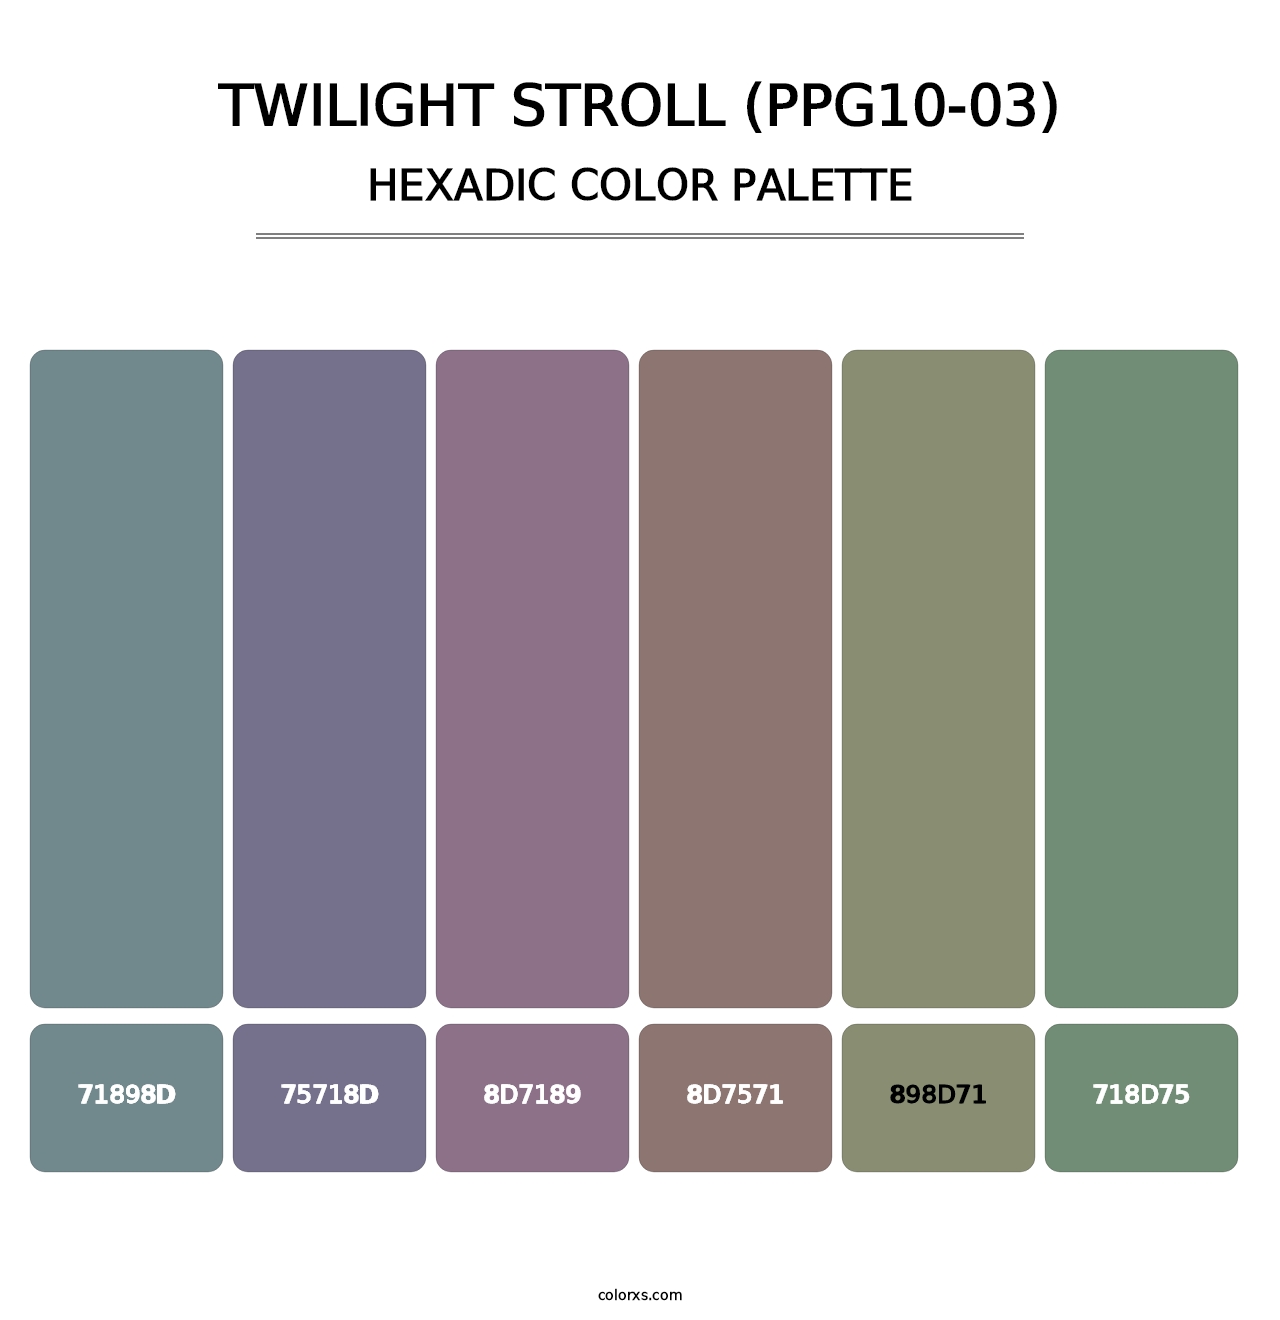 Twilight Stroll (PPG10-03) - Hexadic Color Palette